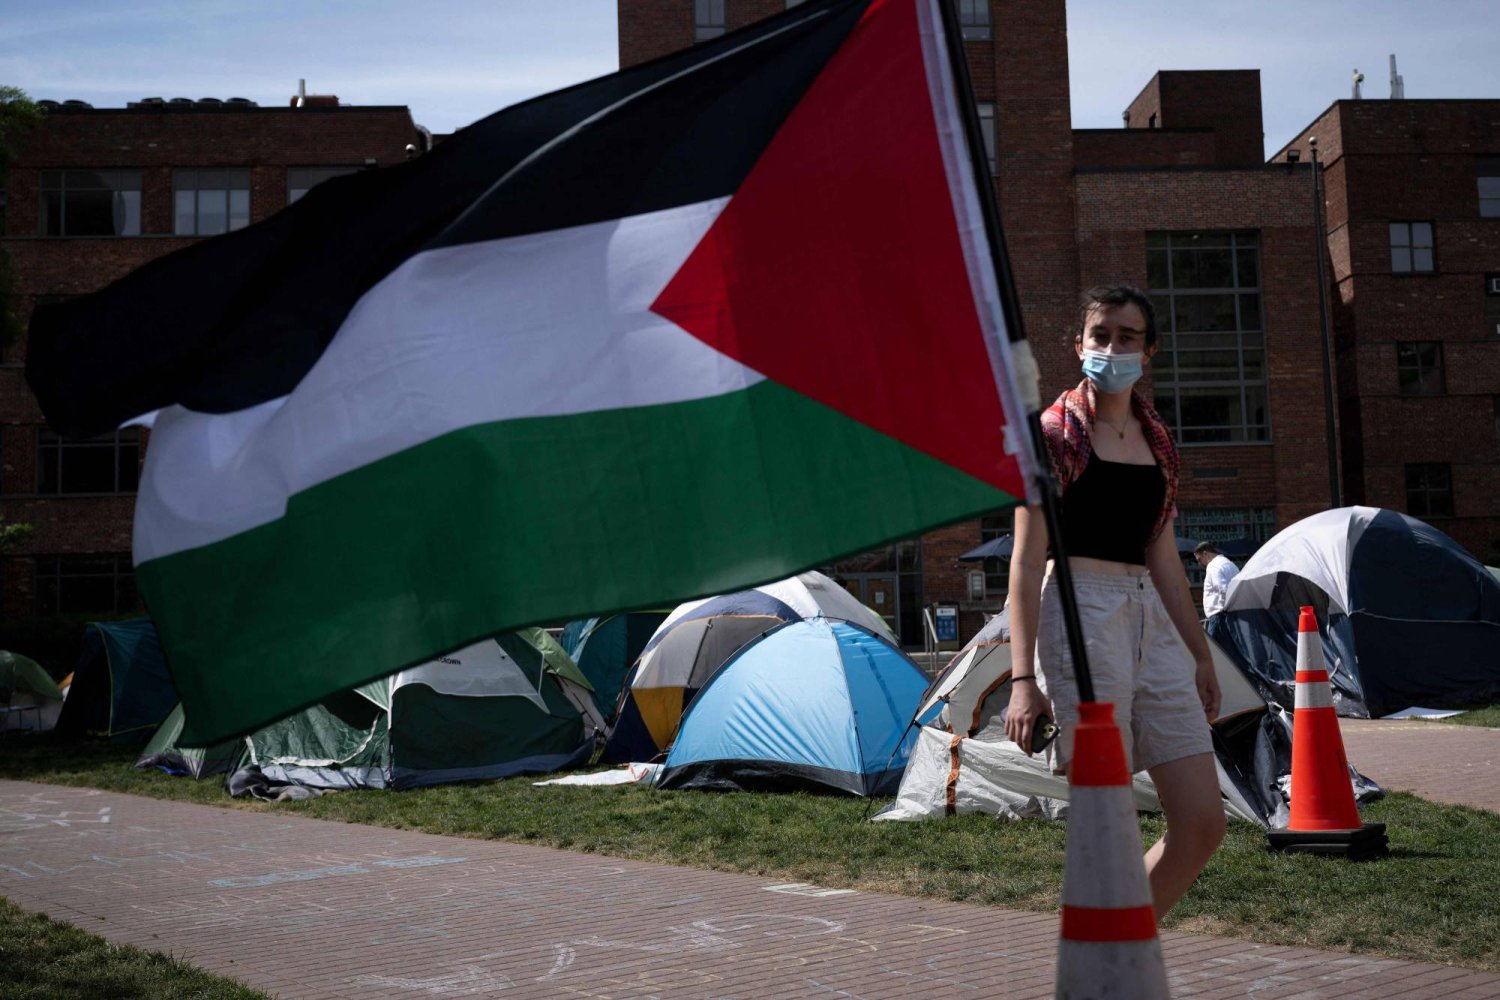 شهدت العشرات من الجامعات في الولايات المتحدة مظاهرات مؤيدة للفلسطينيين في الأسابيع الأخيرة ما أدى إلى اشتباكات مع الشرطة (أ.ف.ب)